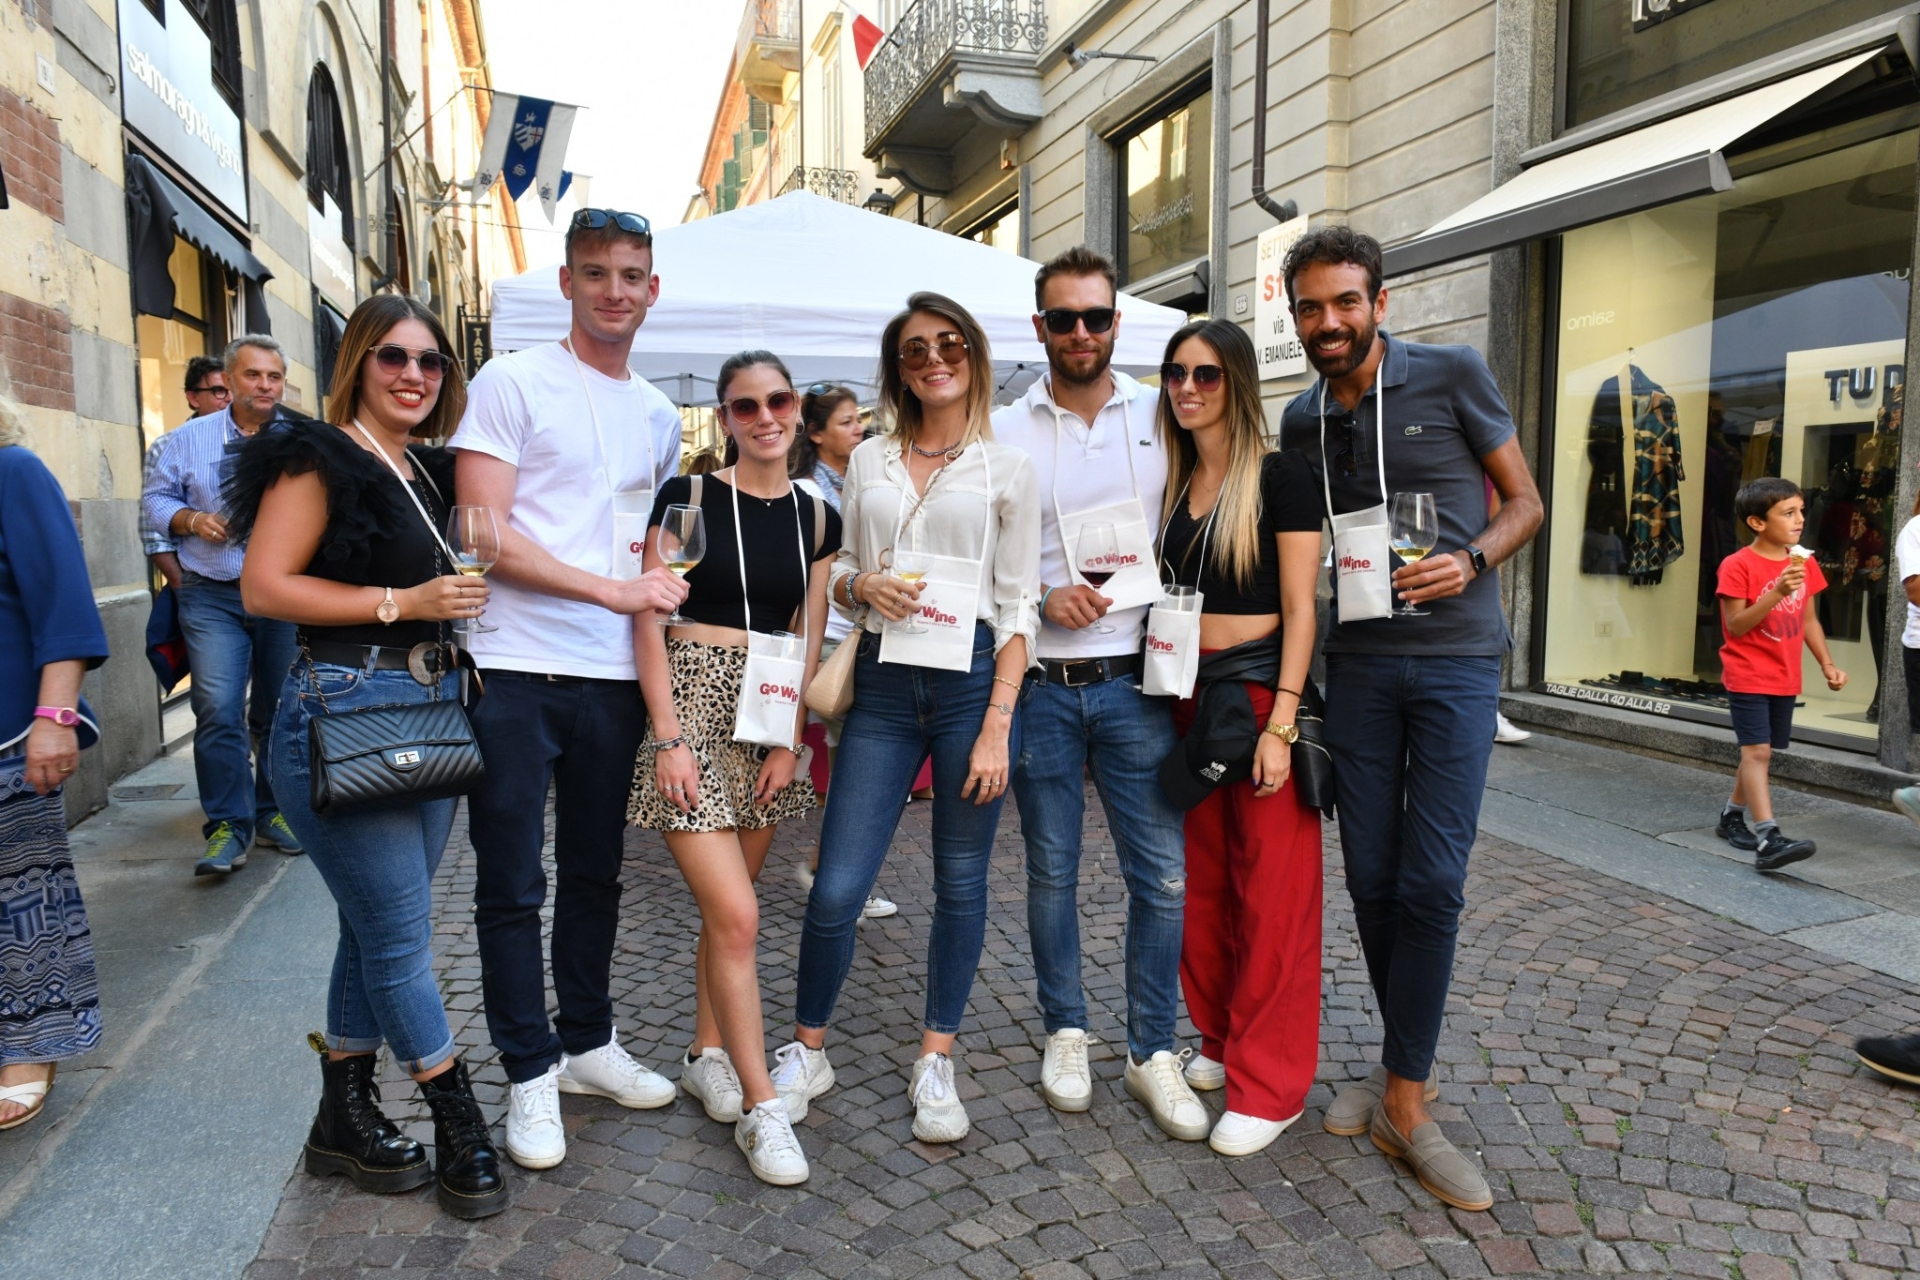 Comment l’Italie intéresse les jeunes au vin